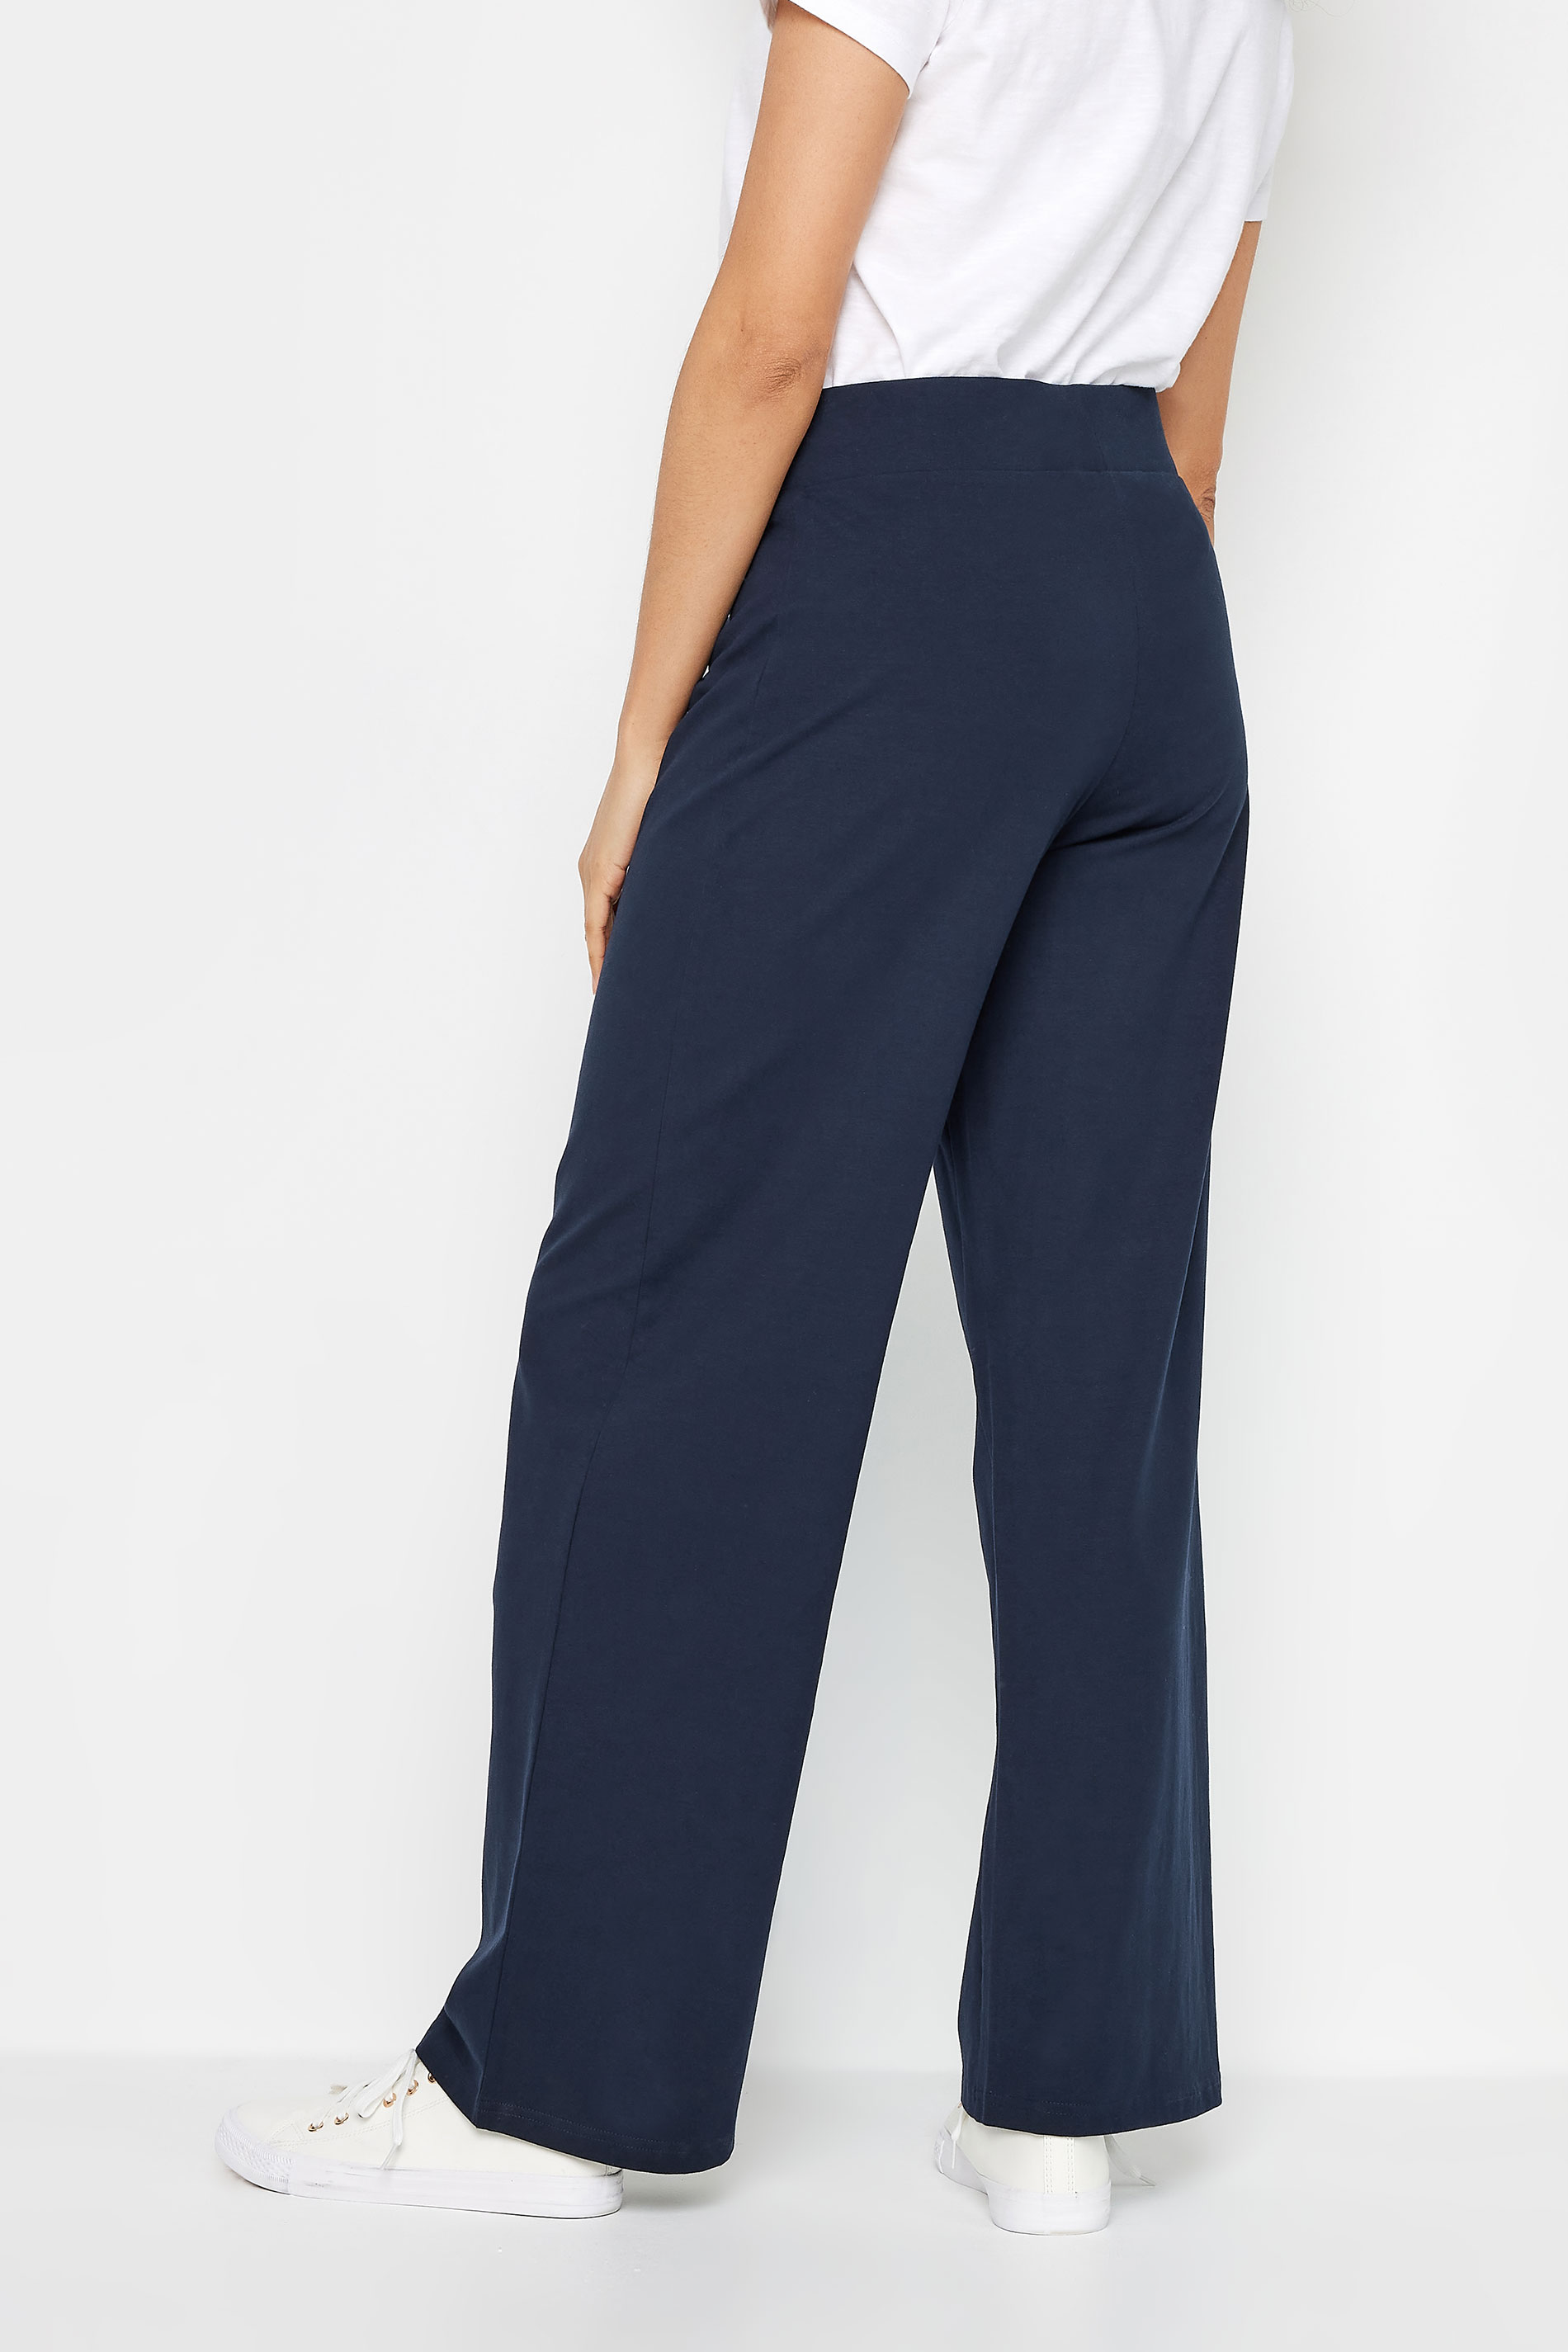 M&Co Navy Blue Wide Leg Yoga Pants | M&Co 3